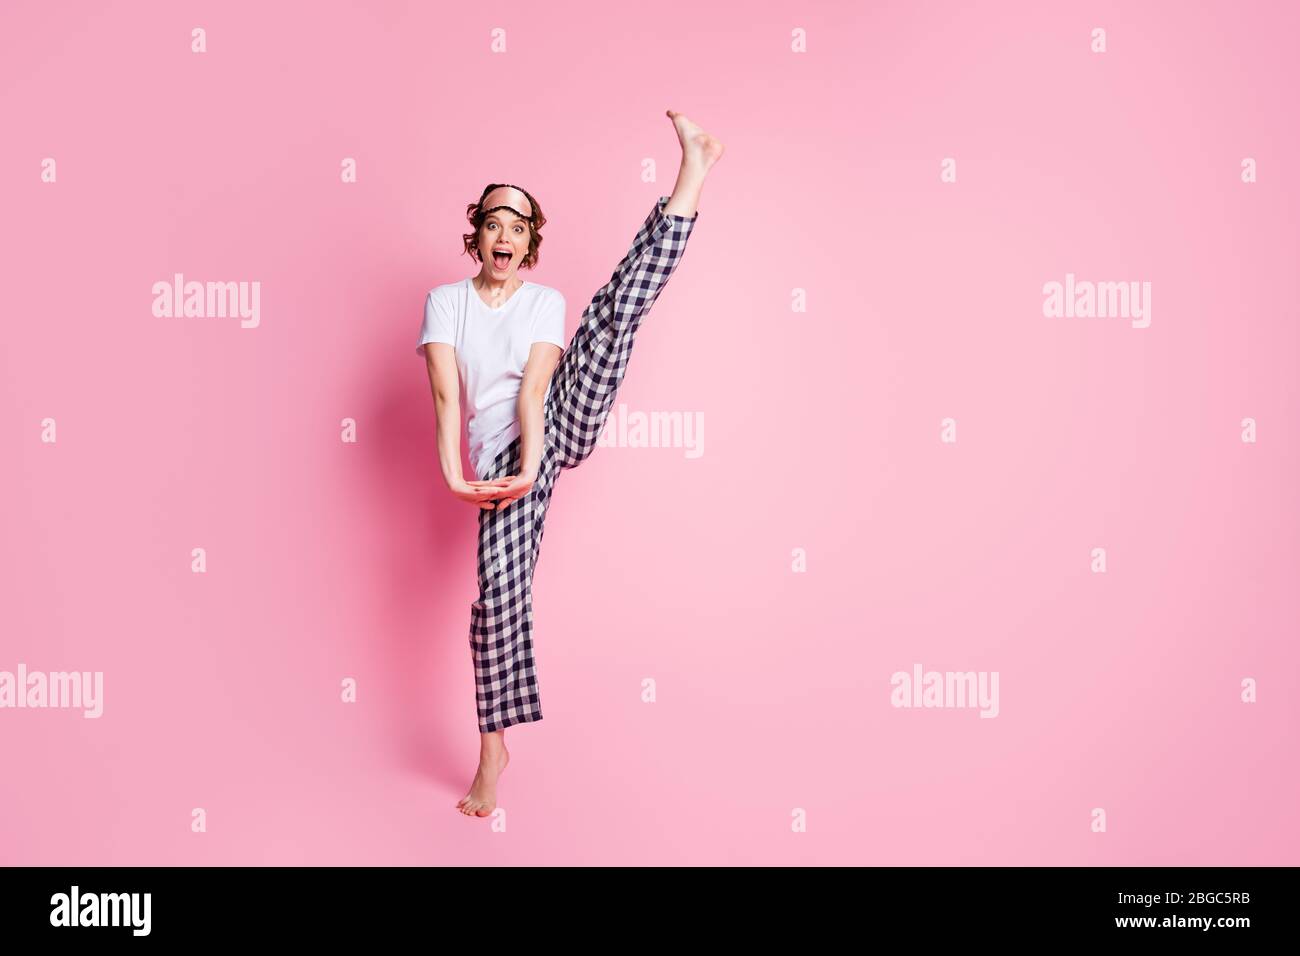 Ganzkörper-Foto von lustigen Dame heben Bein hoch Schlummer Nacht Party  präsentiert perfekte spannende Agilität tragen Schlafmaske weiß T-Shirt  karierten Pyjama Stockfotografie - Alamy